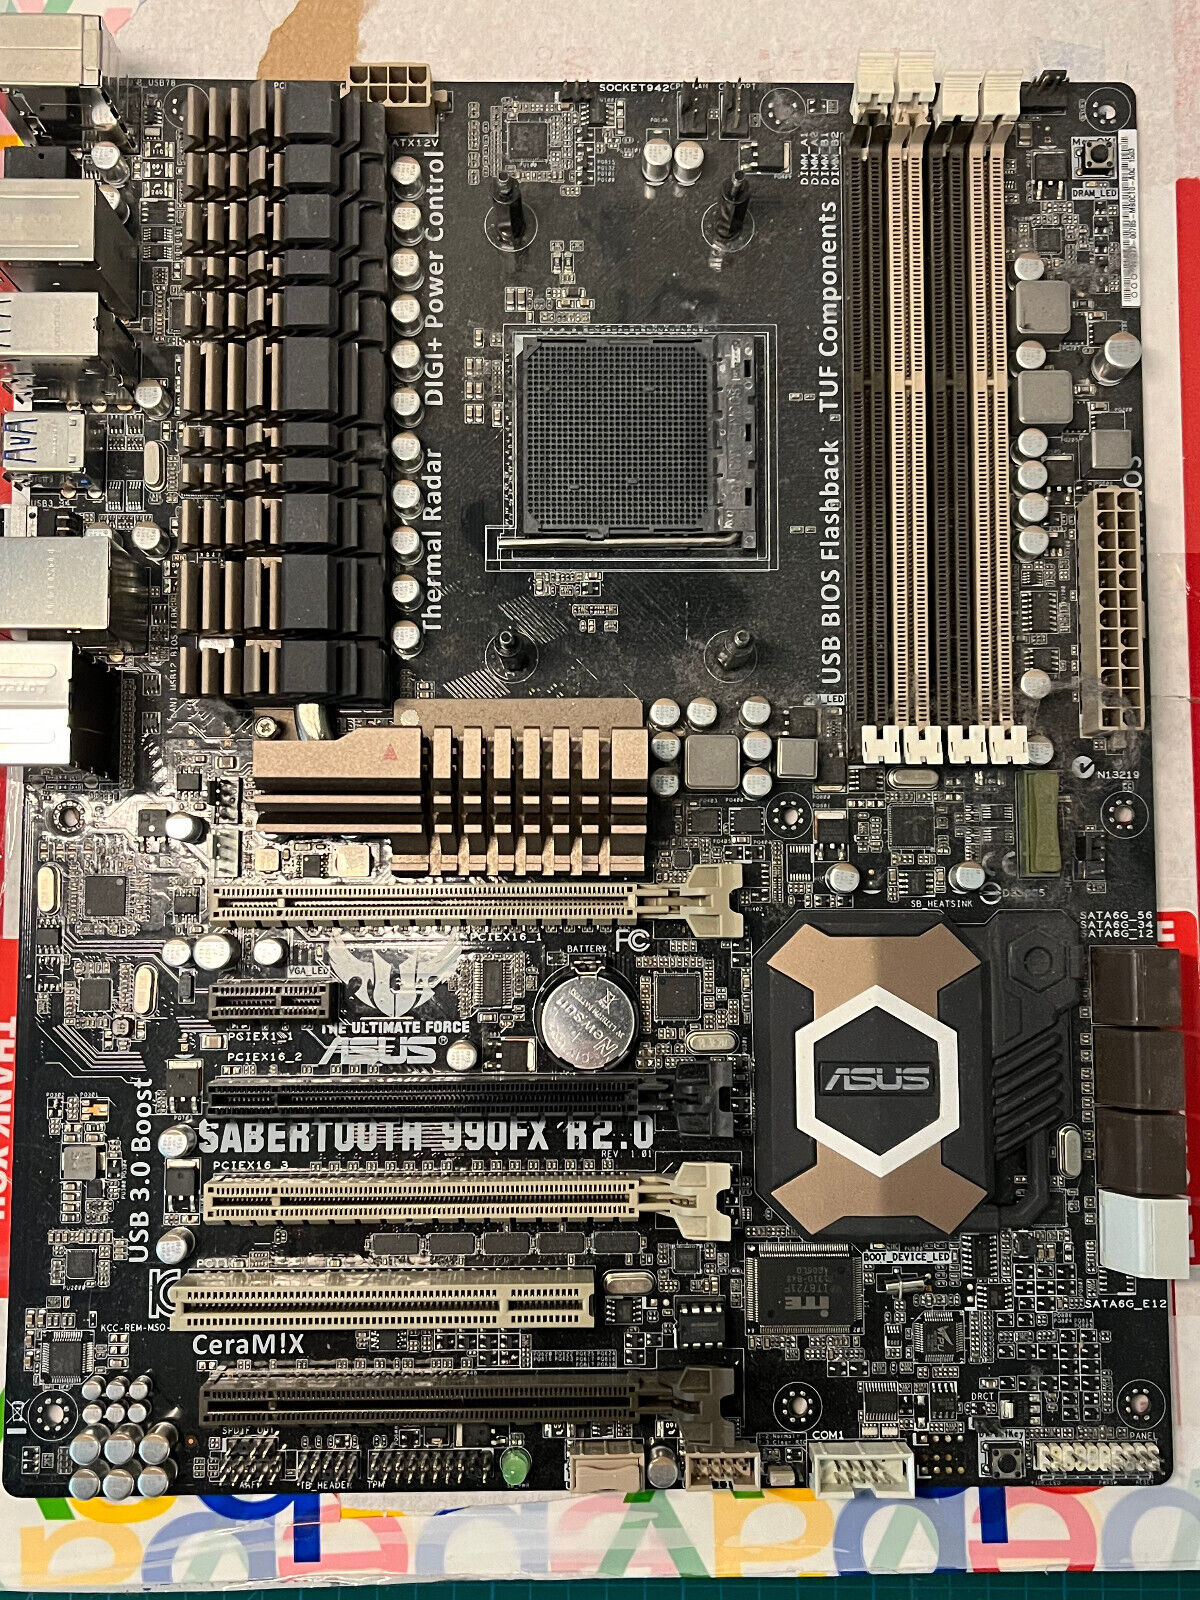 ASUS SABERTOOTH 990FX, AM3+, AMD Motherboard (NO I/O Shield)